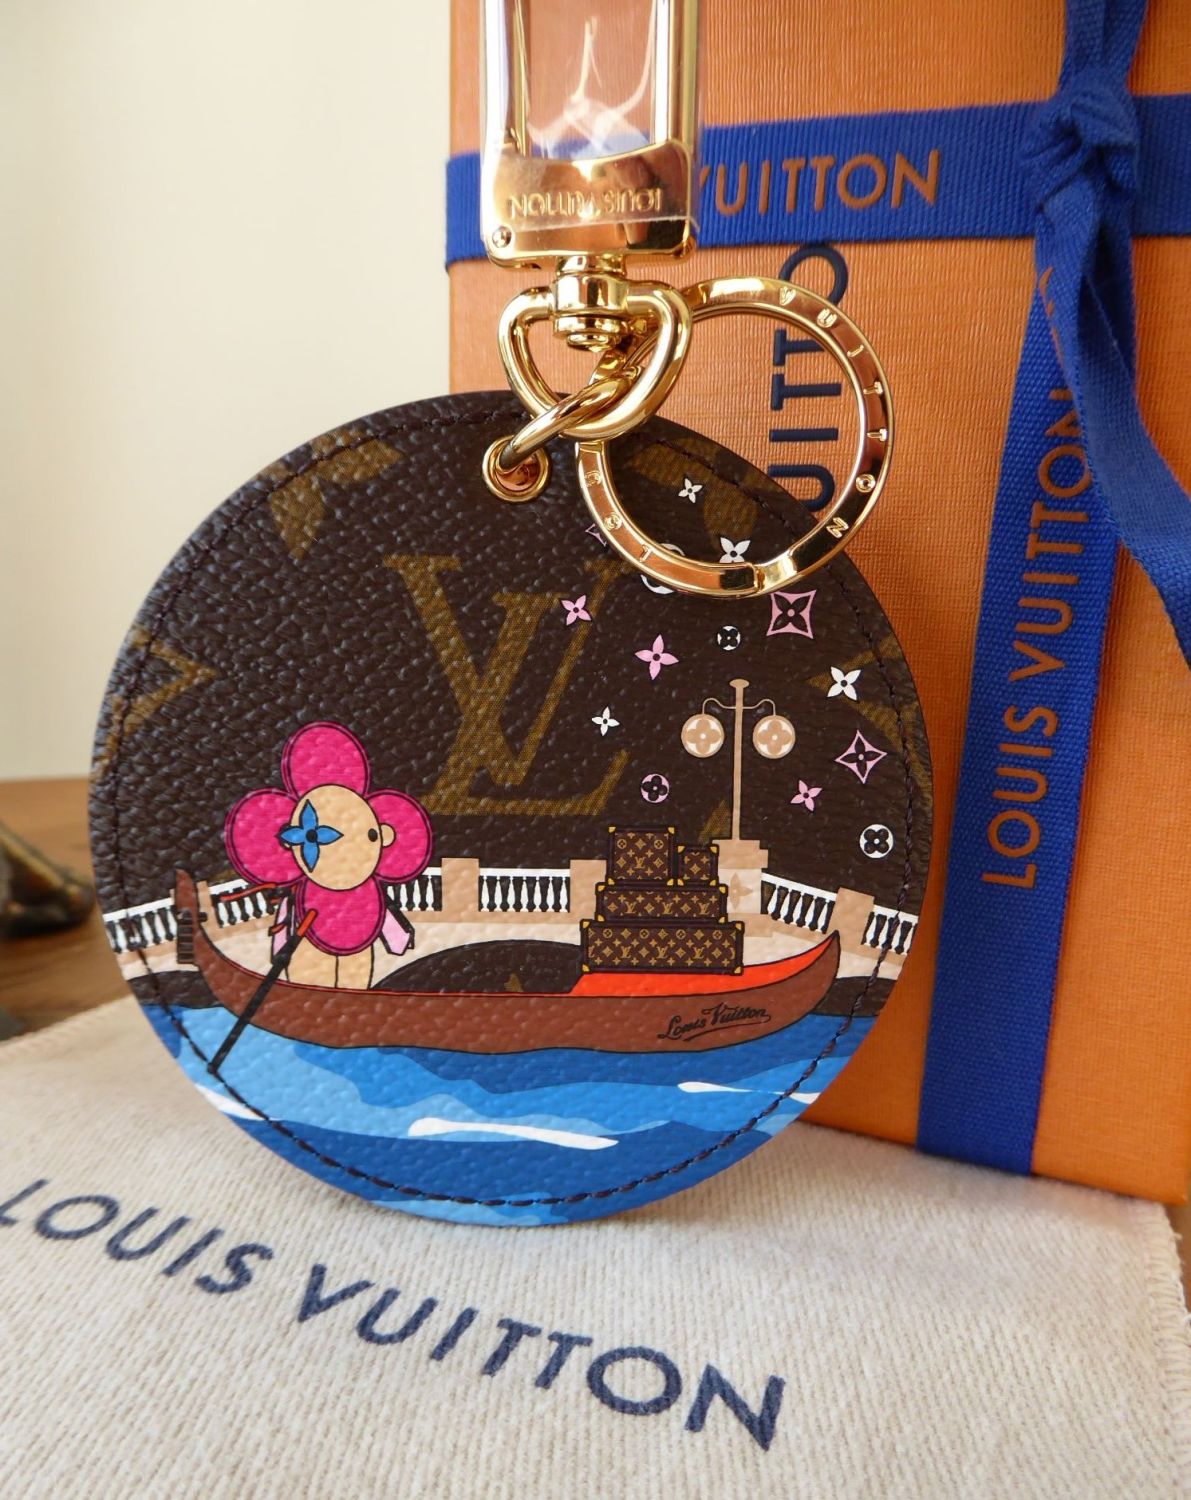 Louis Vuitton Limited Edition Illustre Vivienne Xmas Venice Gondola Bag  Charm Key Holder - New - SOLD